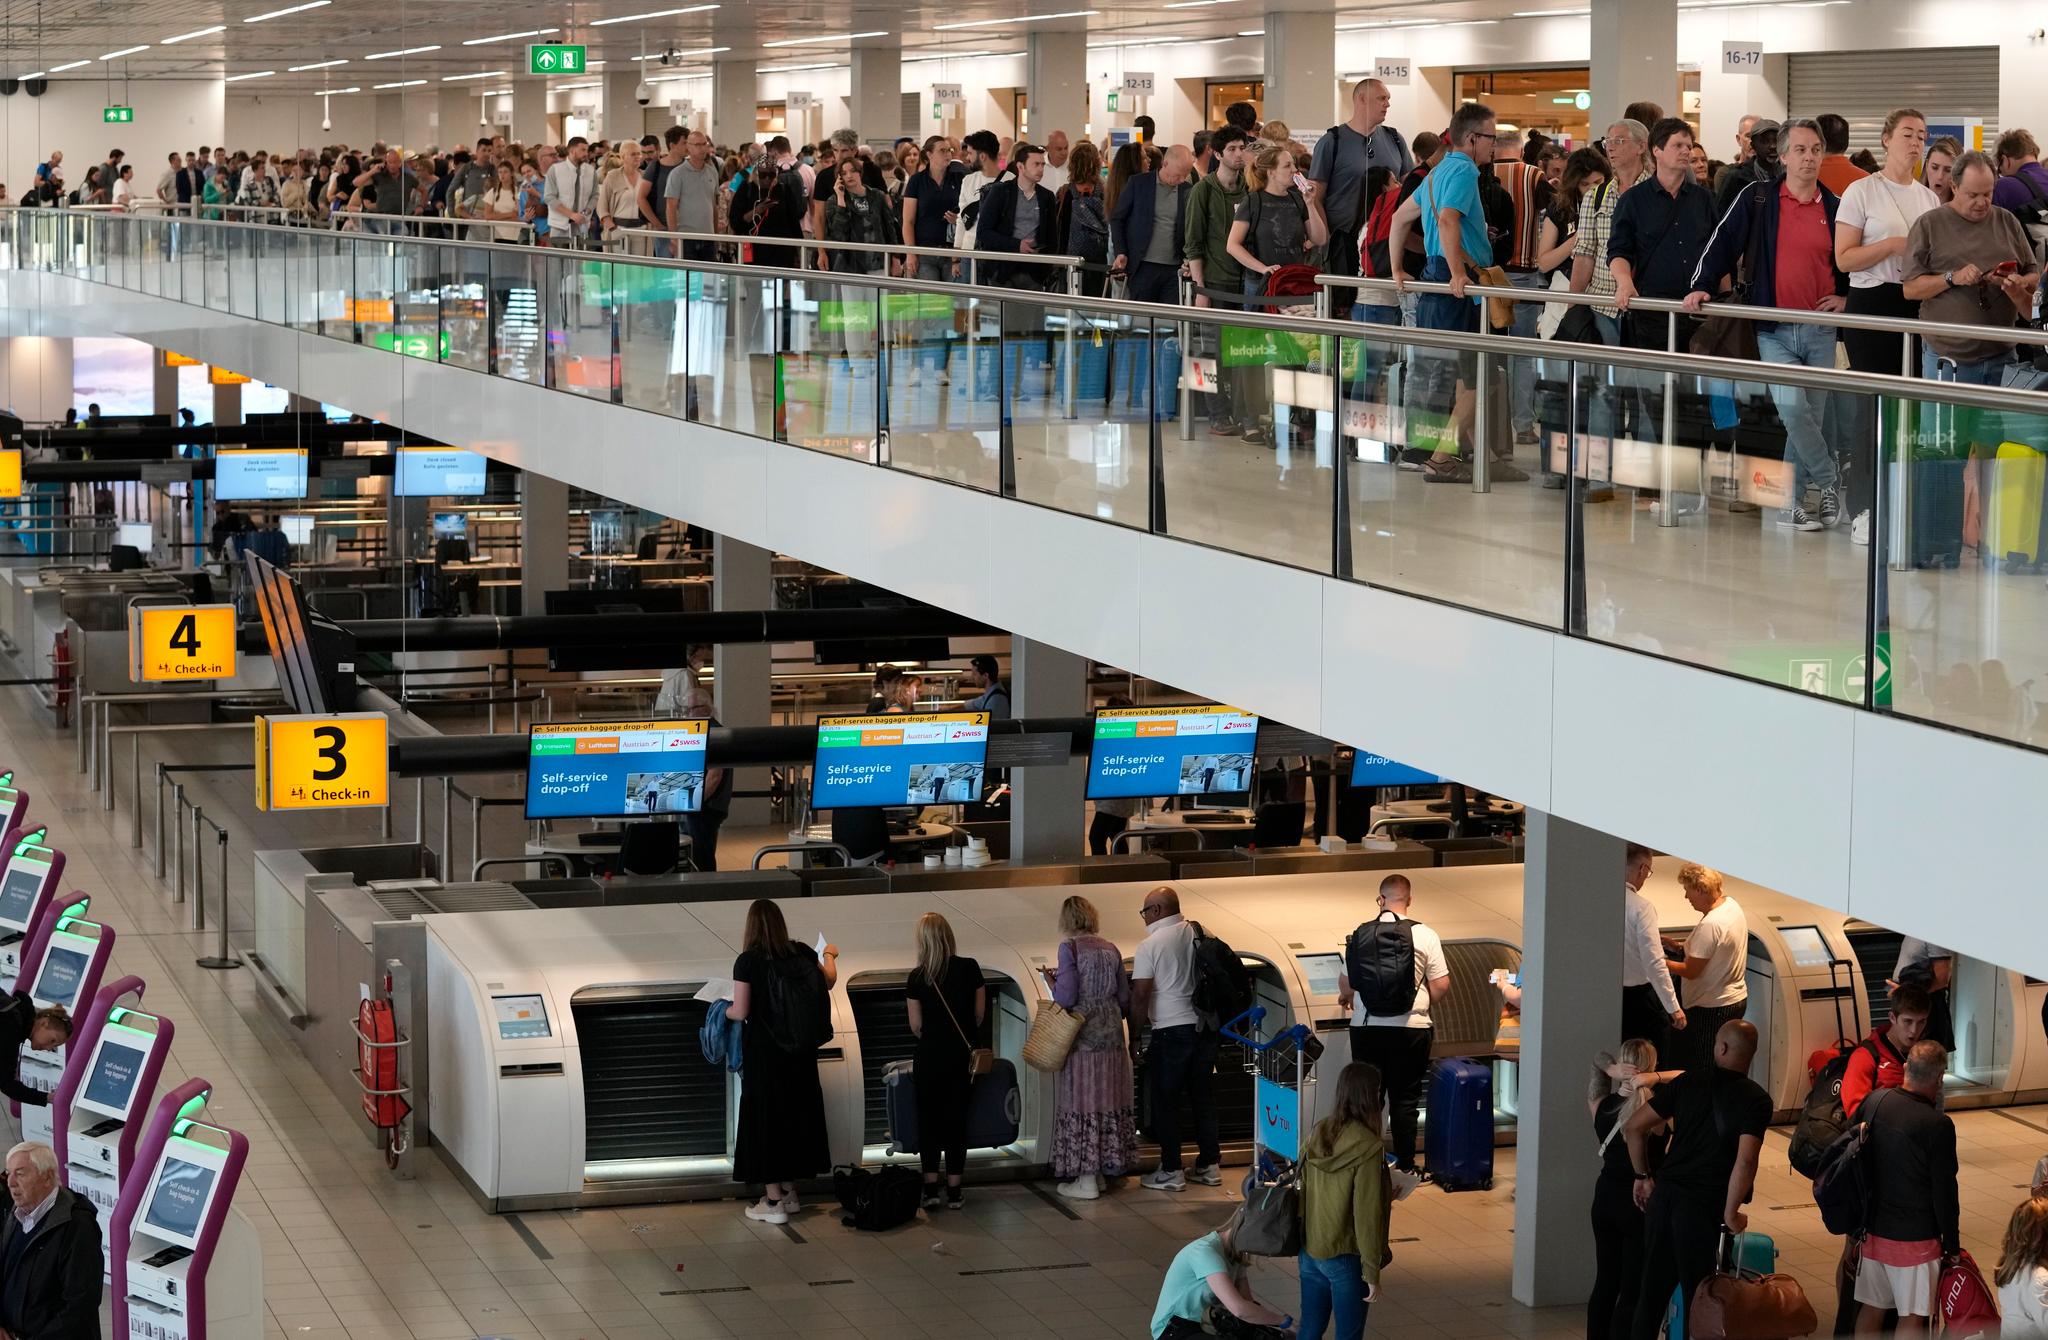 Det er kaos og lange køer på flere flyplasser i Europa. Bildet er nylig tatt på Schiphol i Amsterdam.